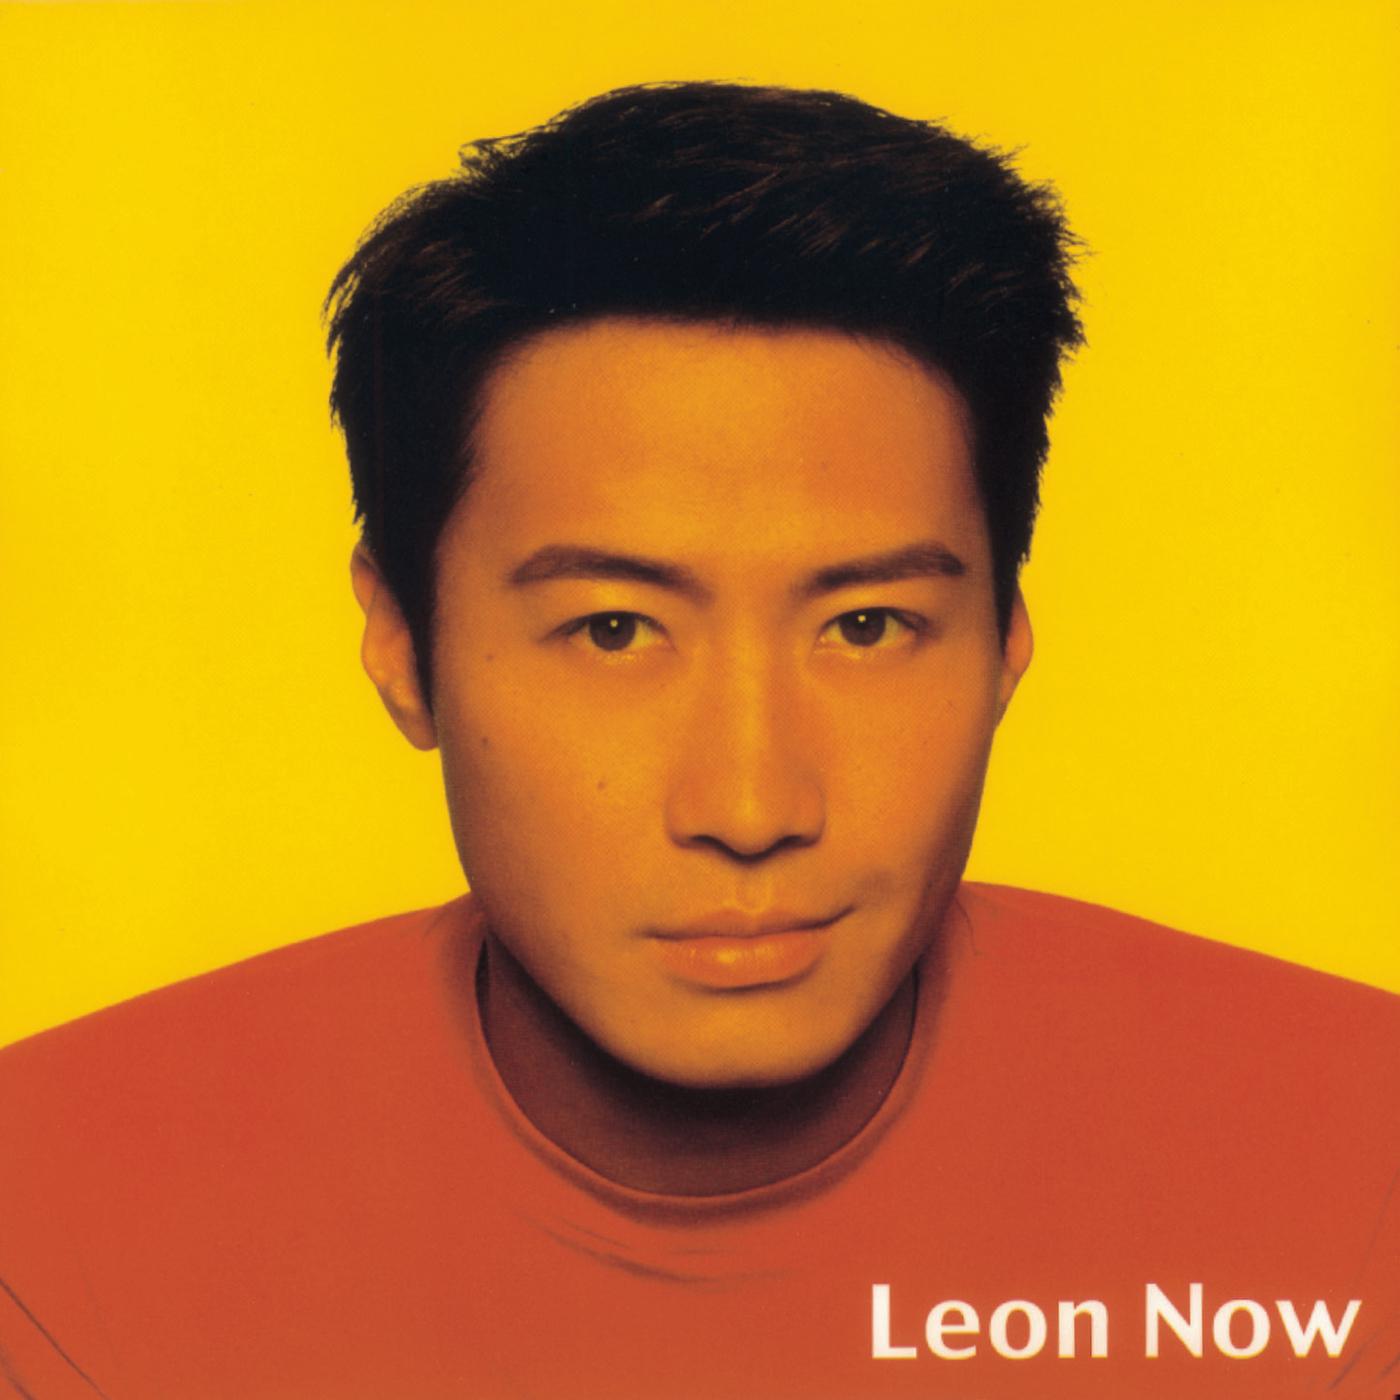 酸歌词 歌手黎明-专辑Leon Now-单曲《酸》LRC歌词下载